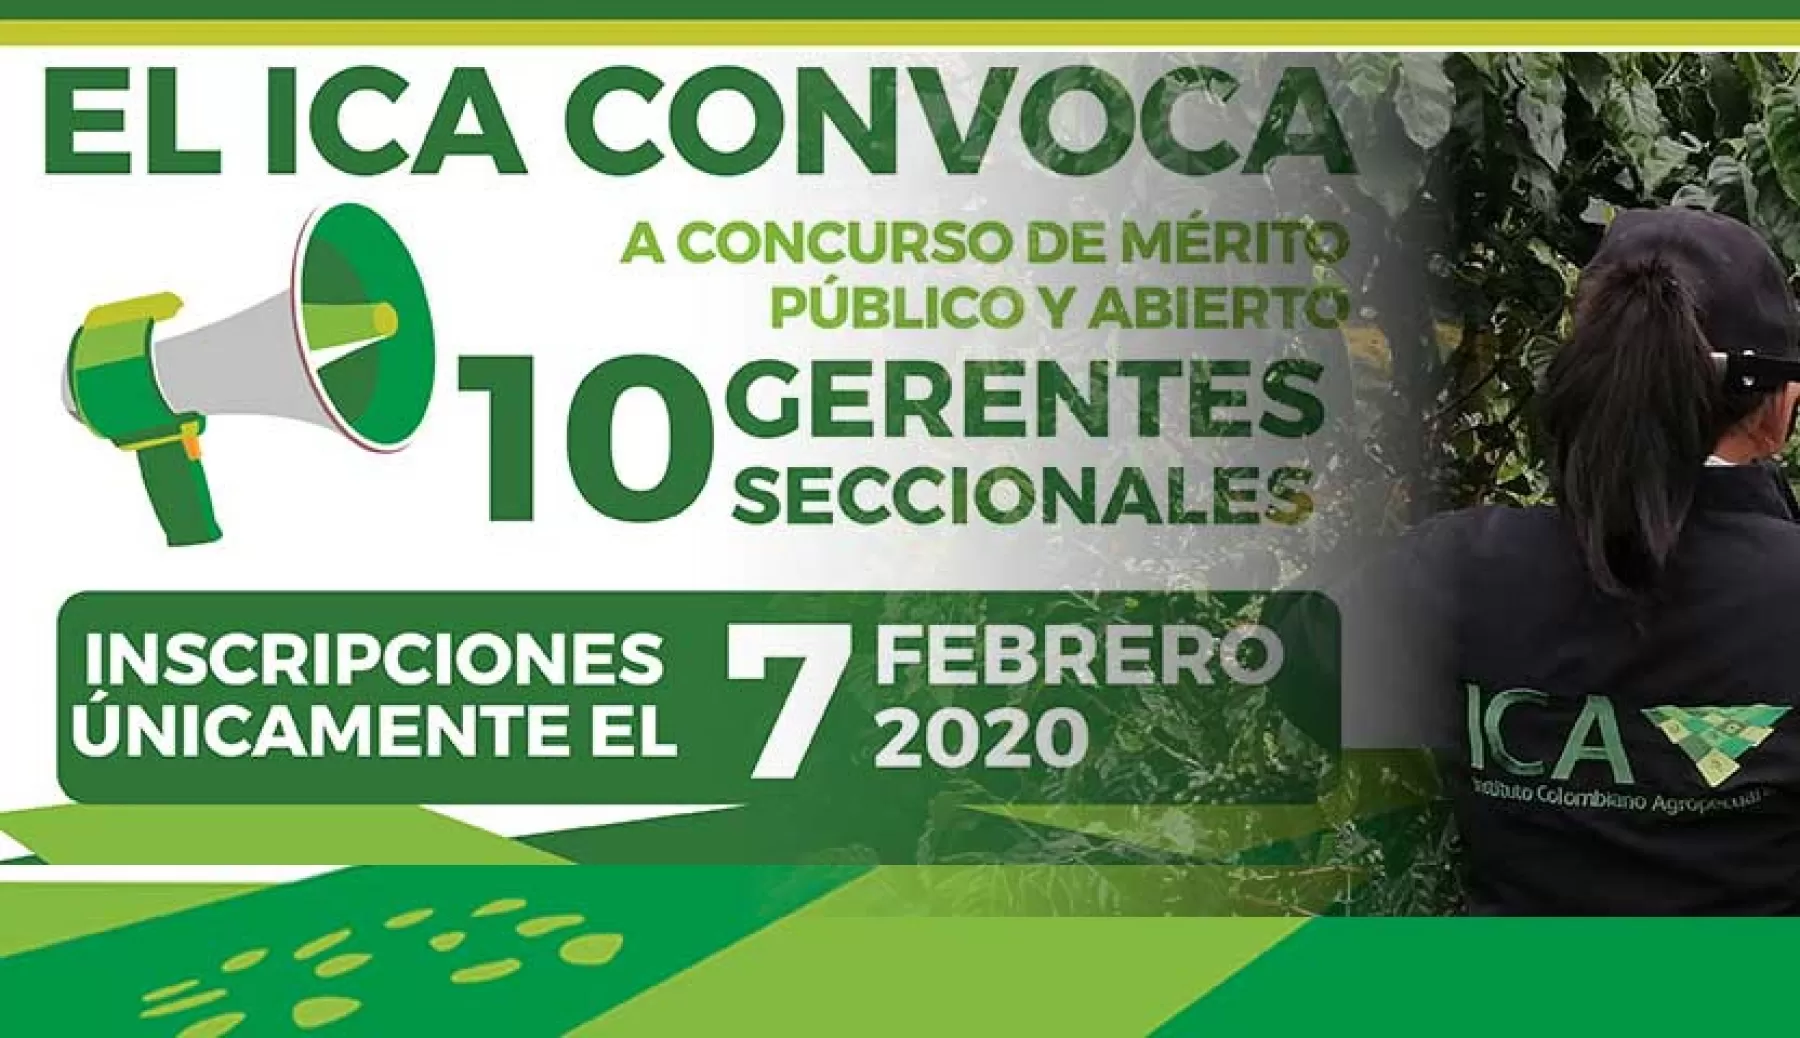 El Instituto Colombiano Agropecuario, ICA, abre  convocatoria para la conformación de las listas de candidatos para la designación de los gerentes seccionales.